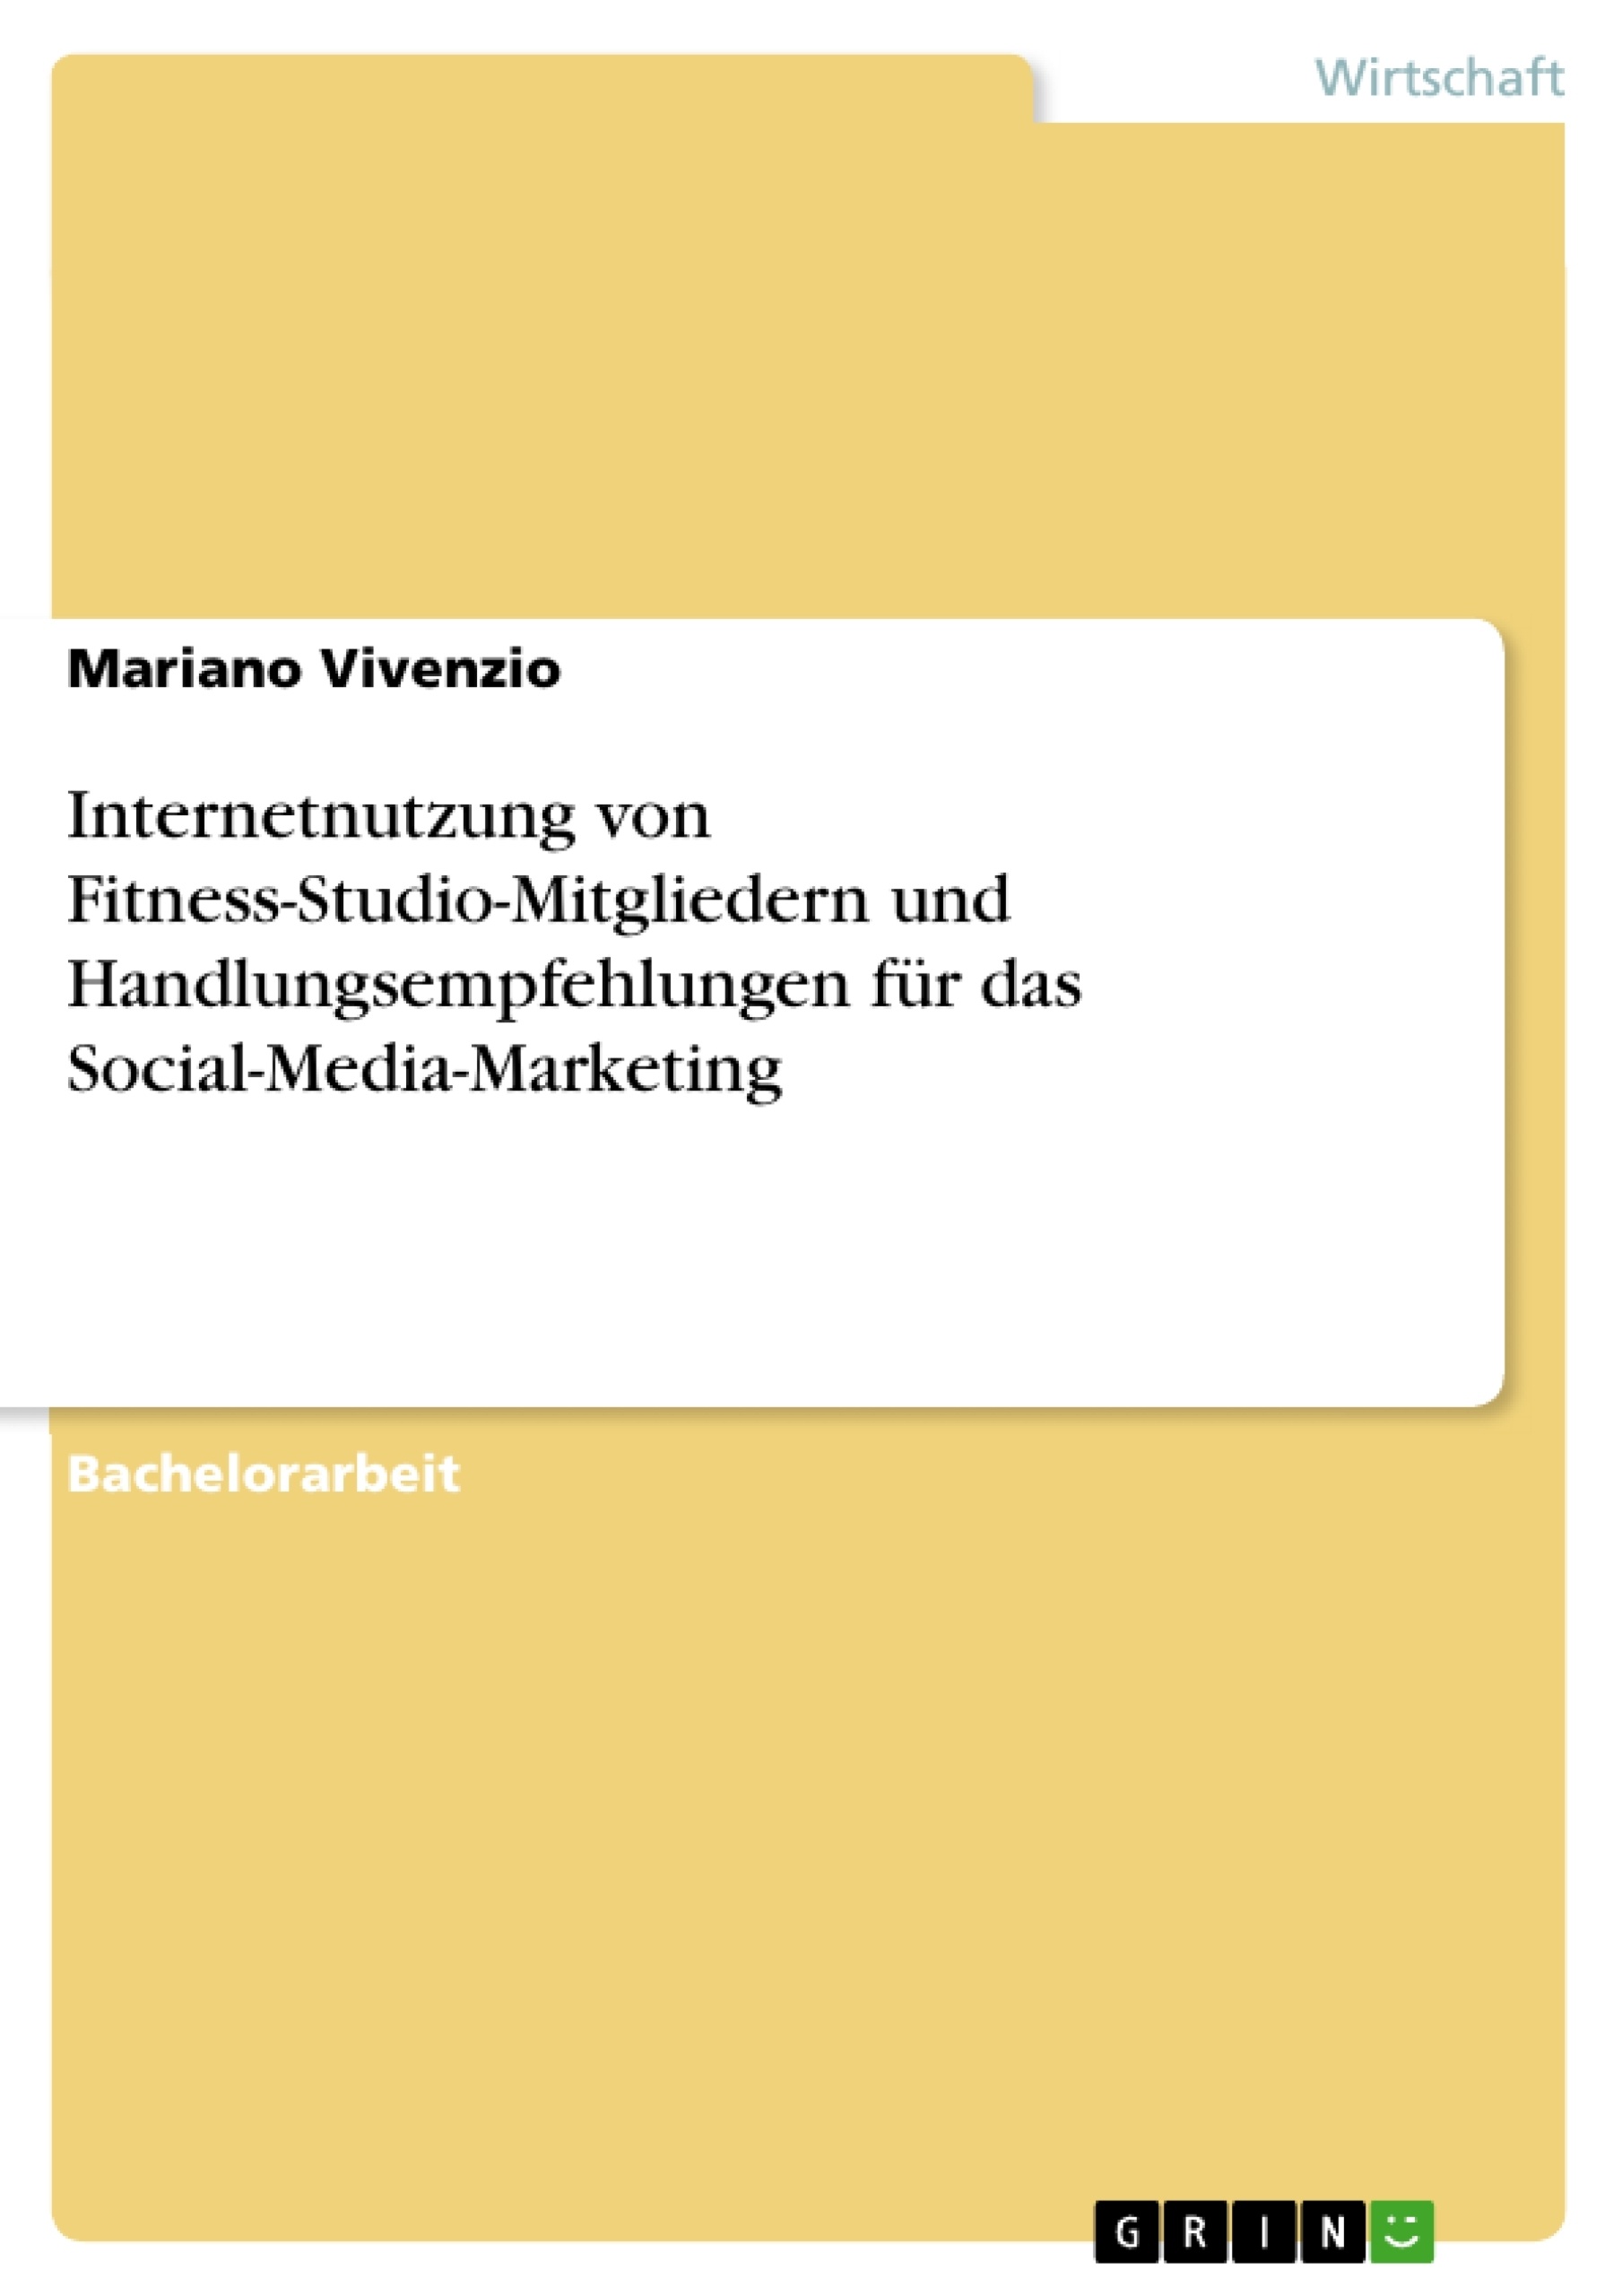 Title: Internetnutzung von Fitness-Studio-Mitgliedern und Handlungsempfehlungen für das Social-Media-Marketing